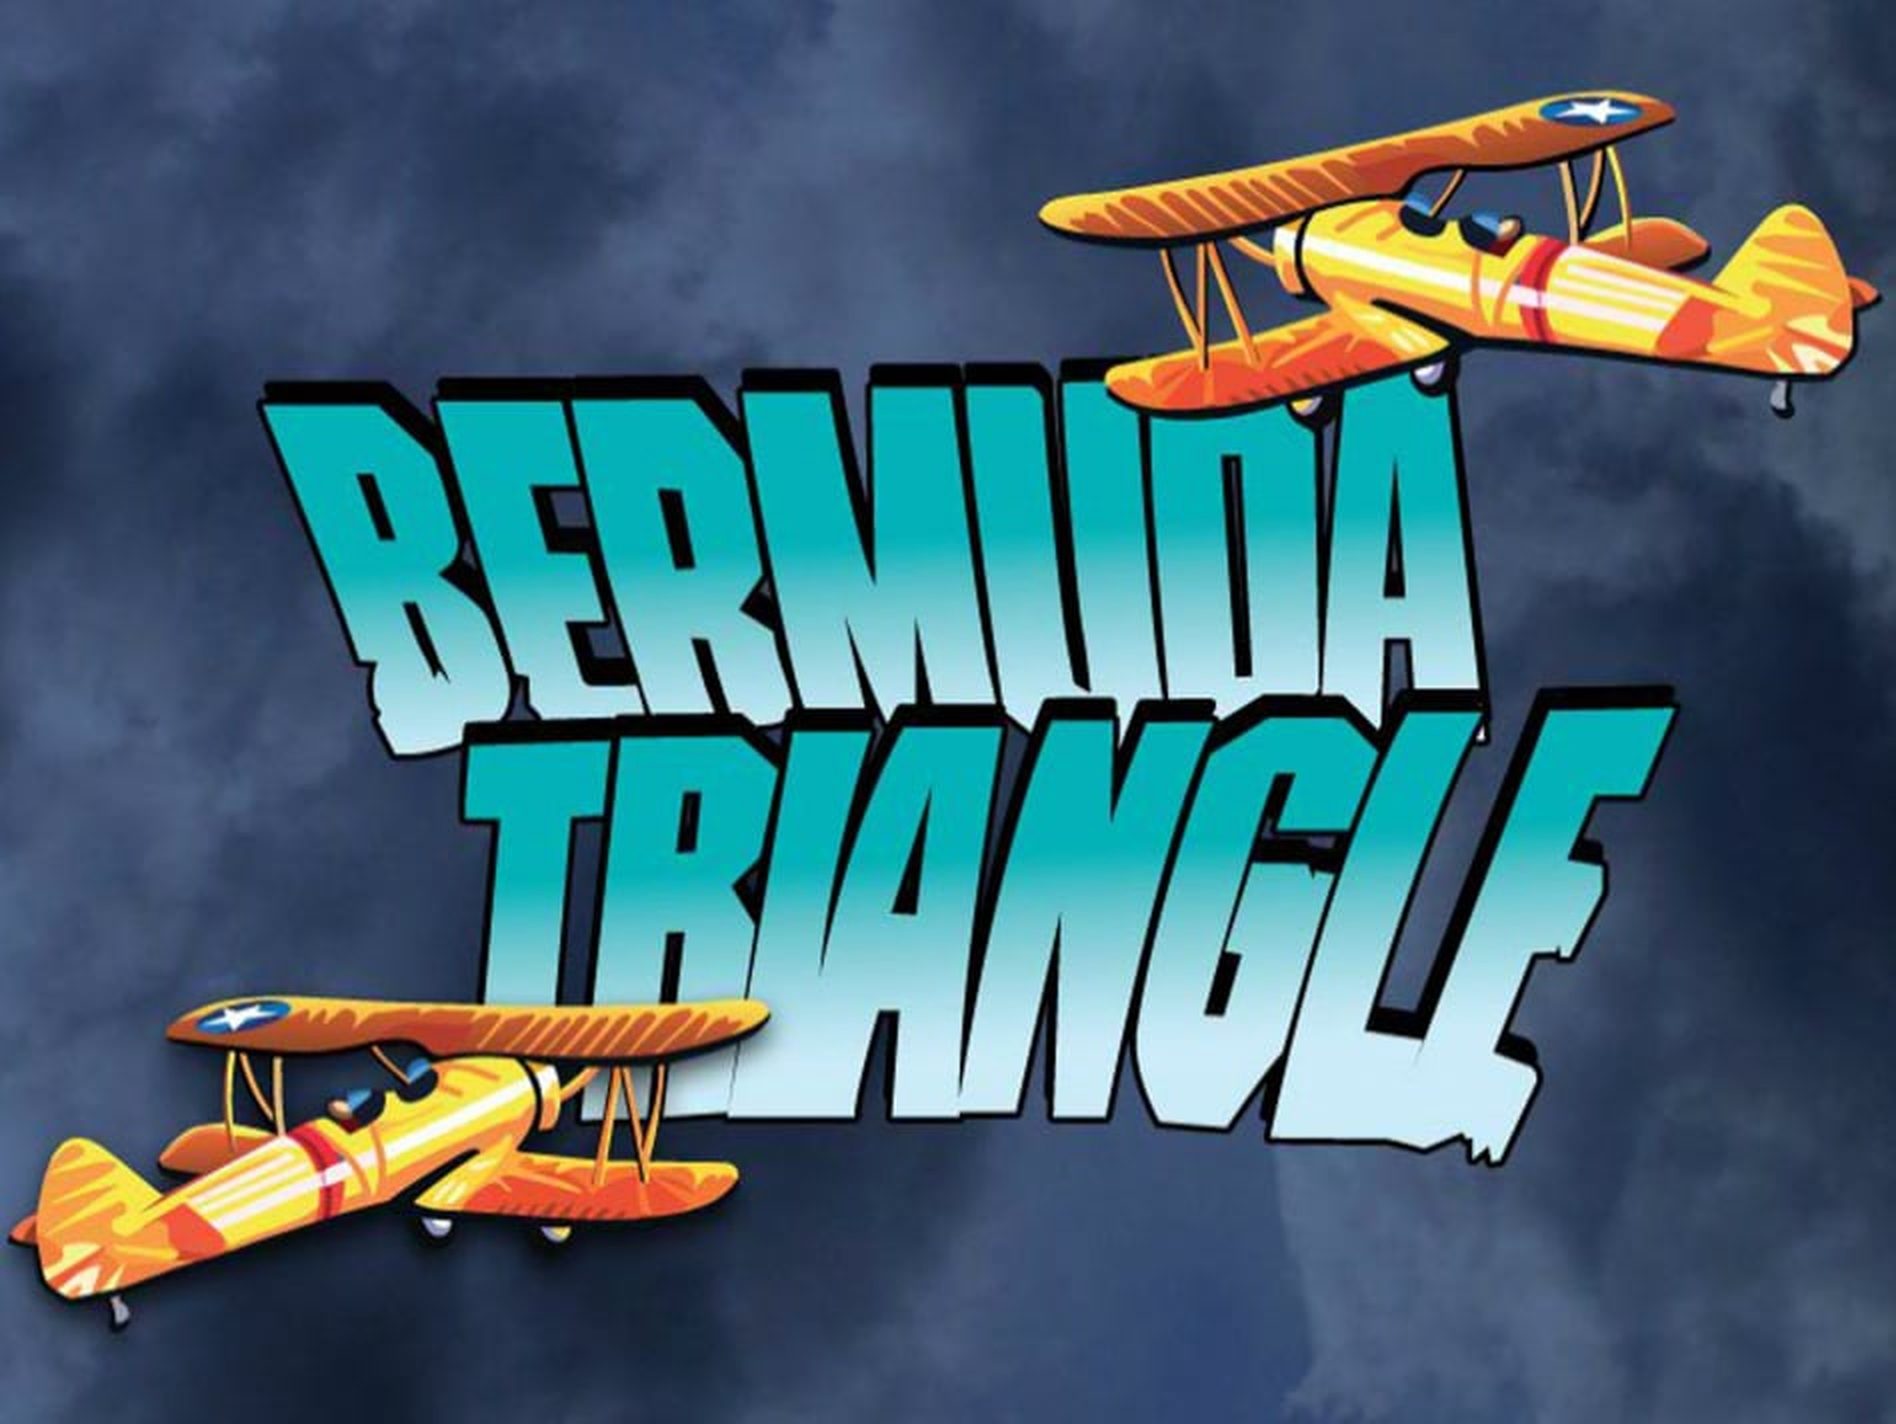 Bermuda Triangle demo